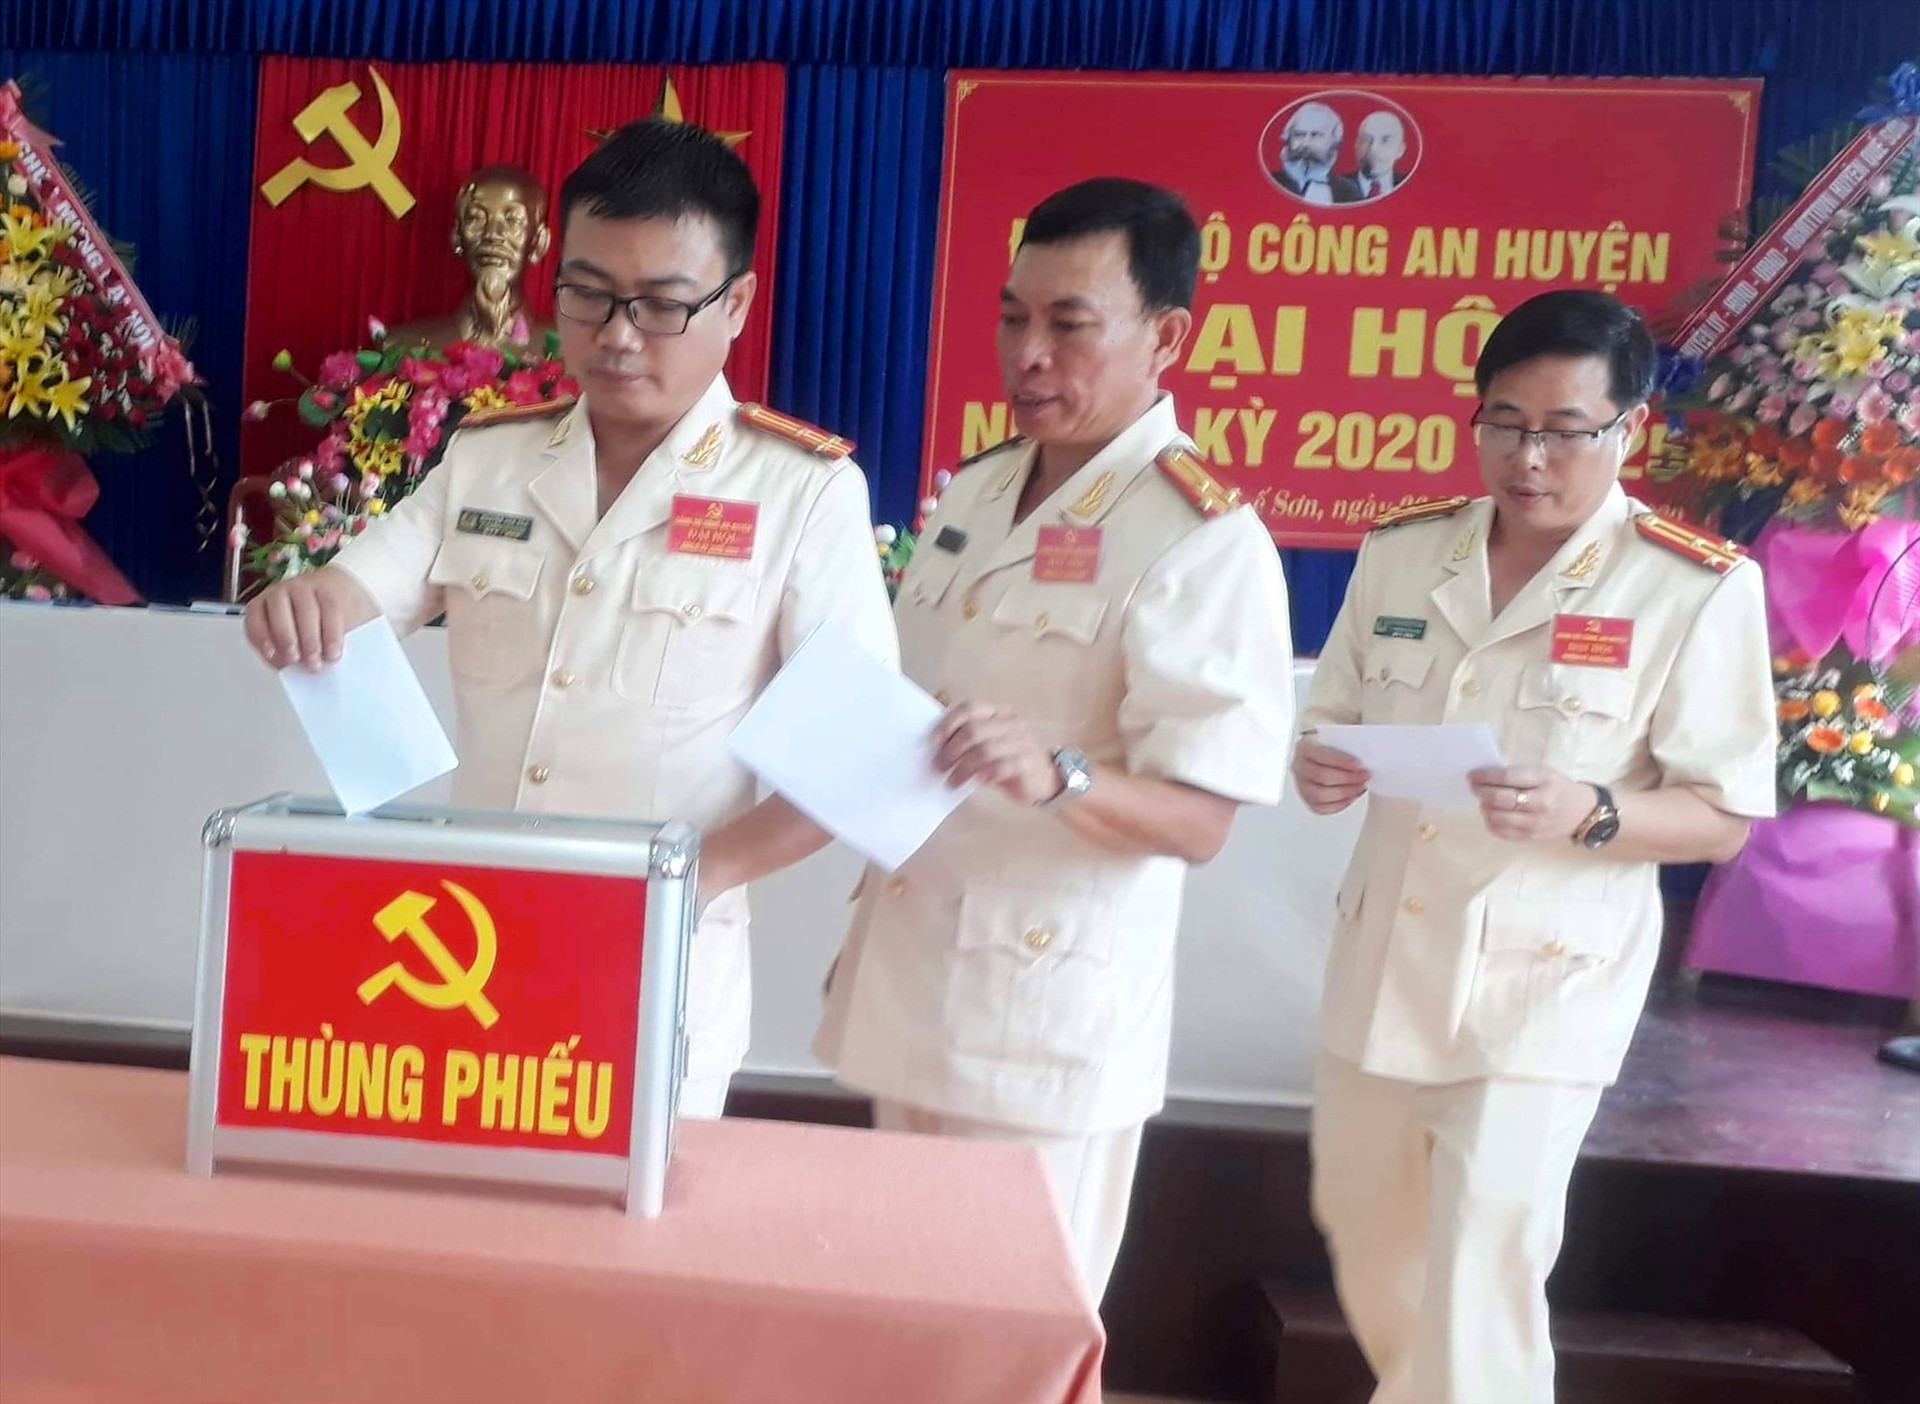 Bầu Ban chấp hành Đảng bộ Công an huyện Quế Sơn nhiệm kỳ 2020-2025. ảnh DT